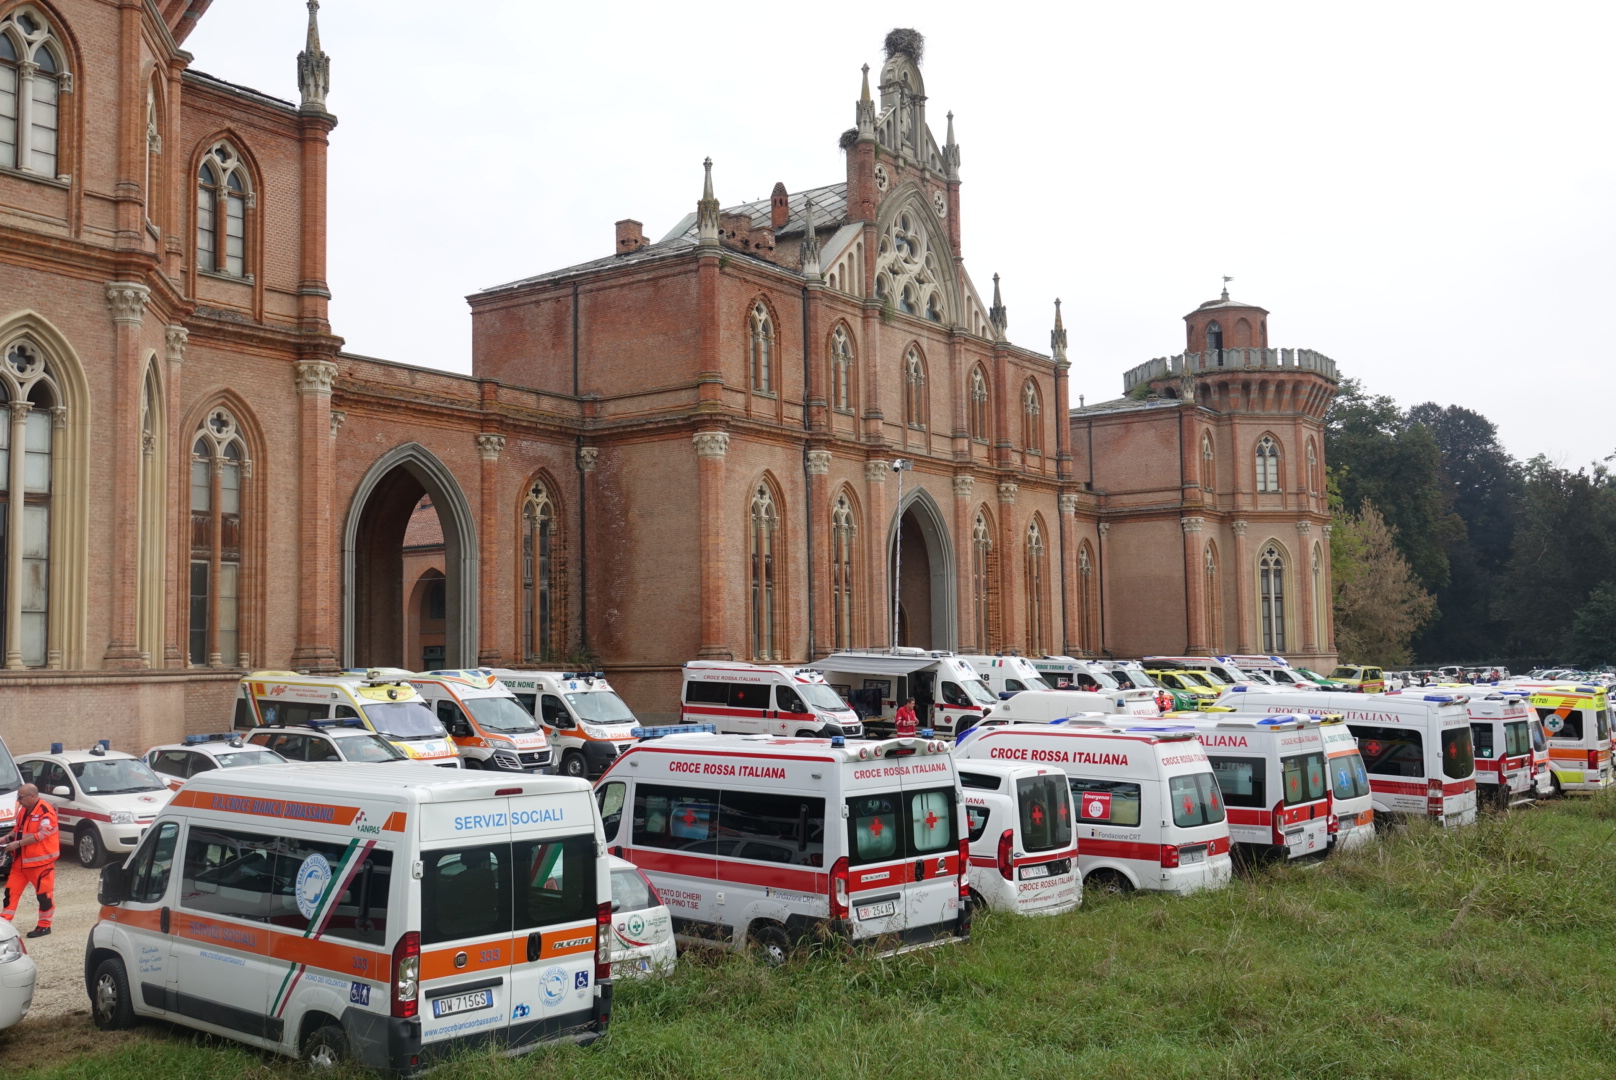 Grazie al contributo straordinario di Fondazione CRT, cinque nuove ambulanze completamente attrezzate saranno destinate alla provincia di Torino per fronteggiare l’emergenza sanitaria Coronavirus.